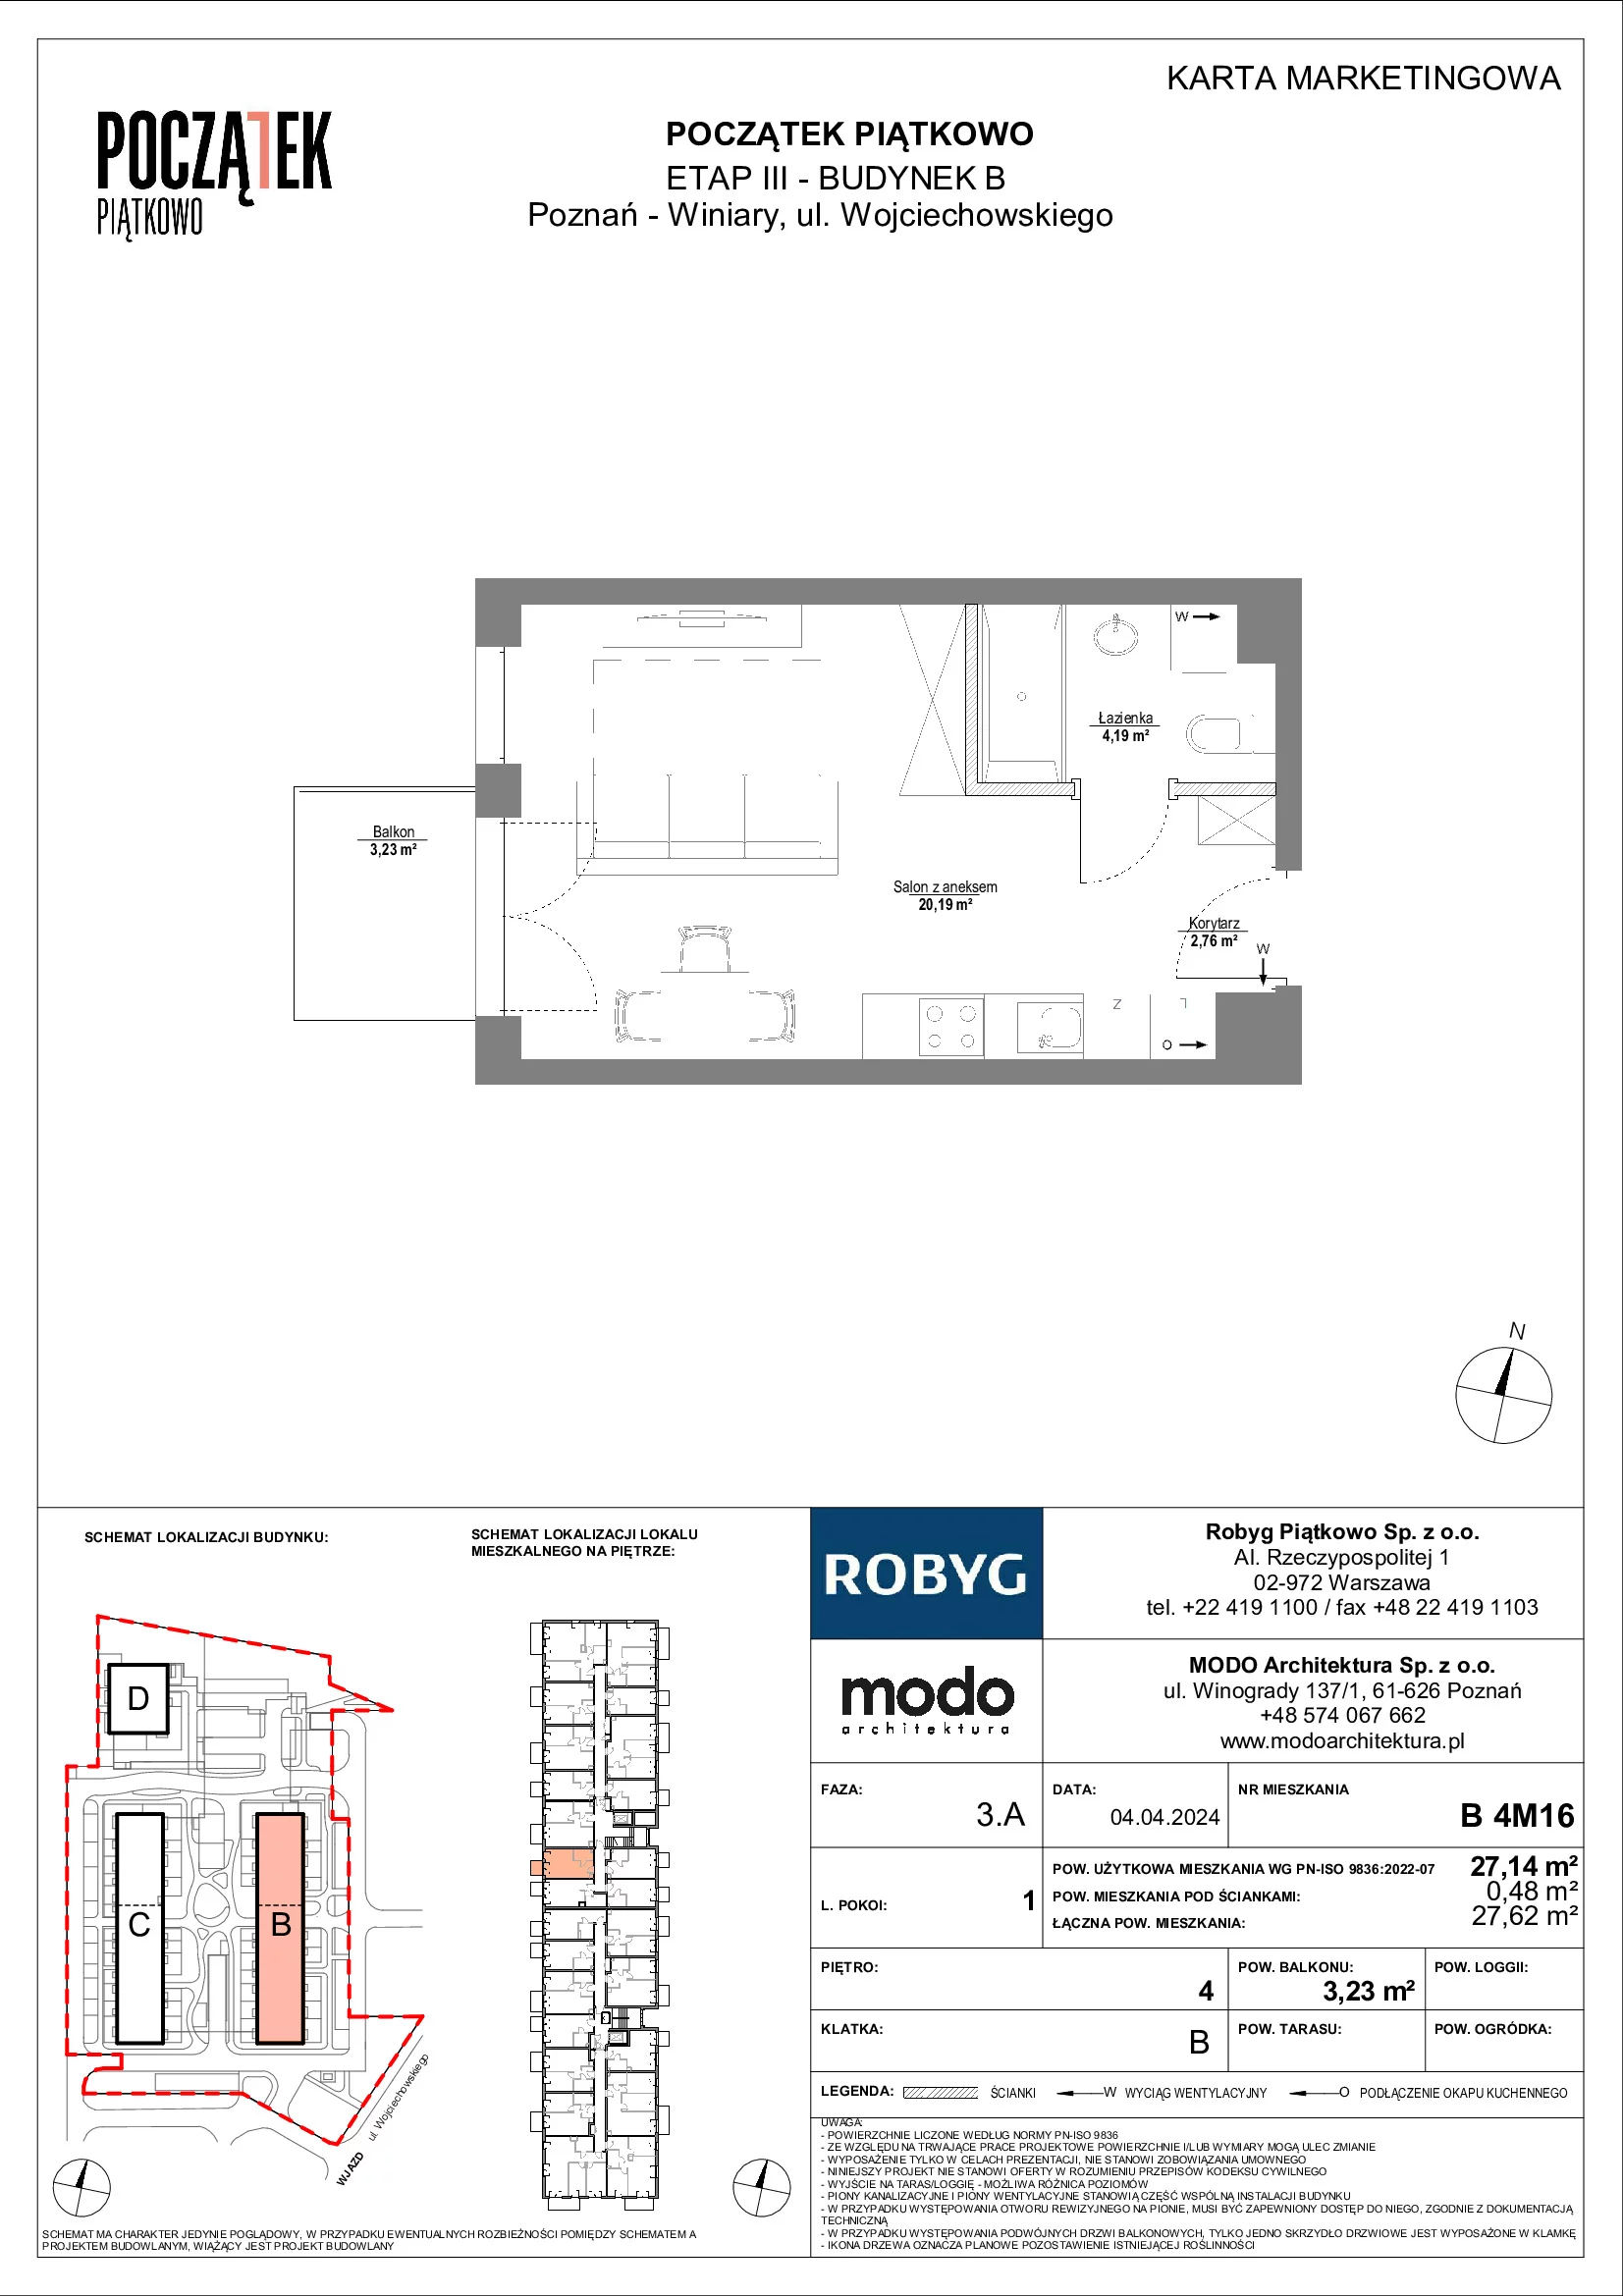 Mieszkanie 27,14 m², piętro 4, oferta nr B.4M16, Początek Piątkowo, Poznań, Piątkowo, ul. Wojciechowskiego